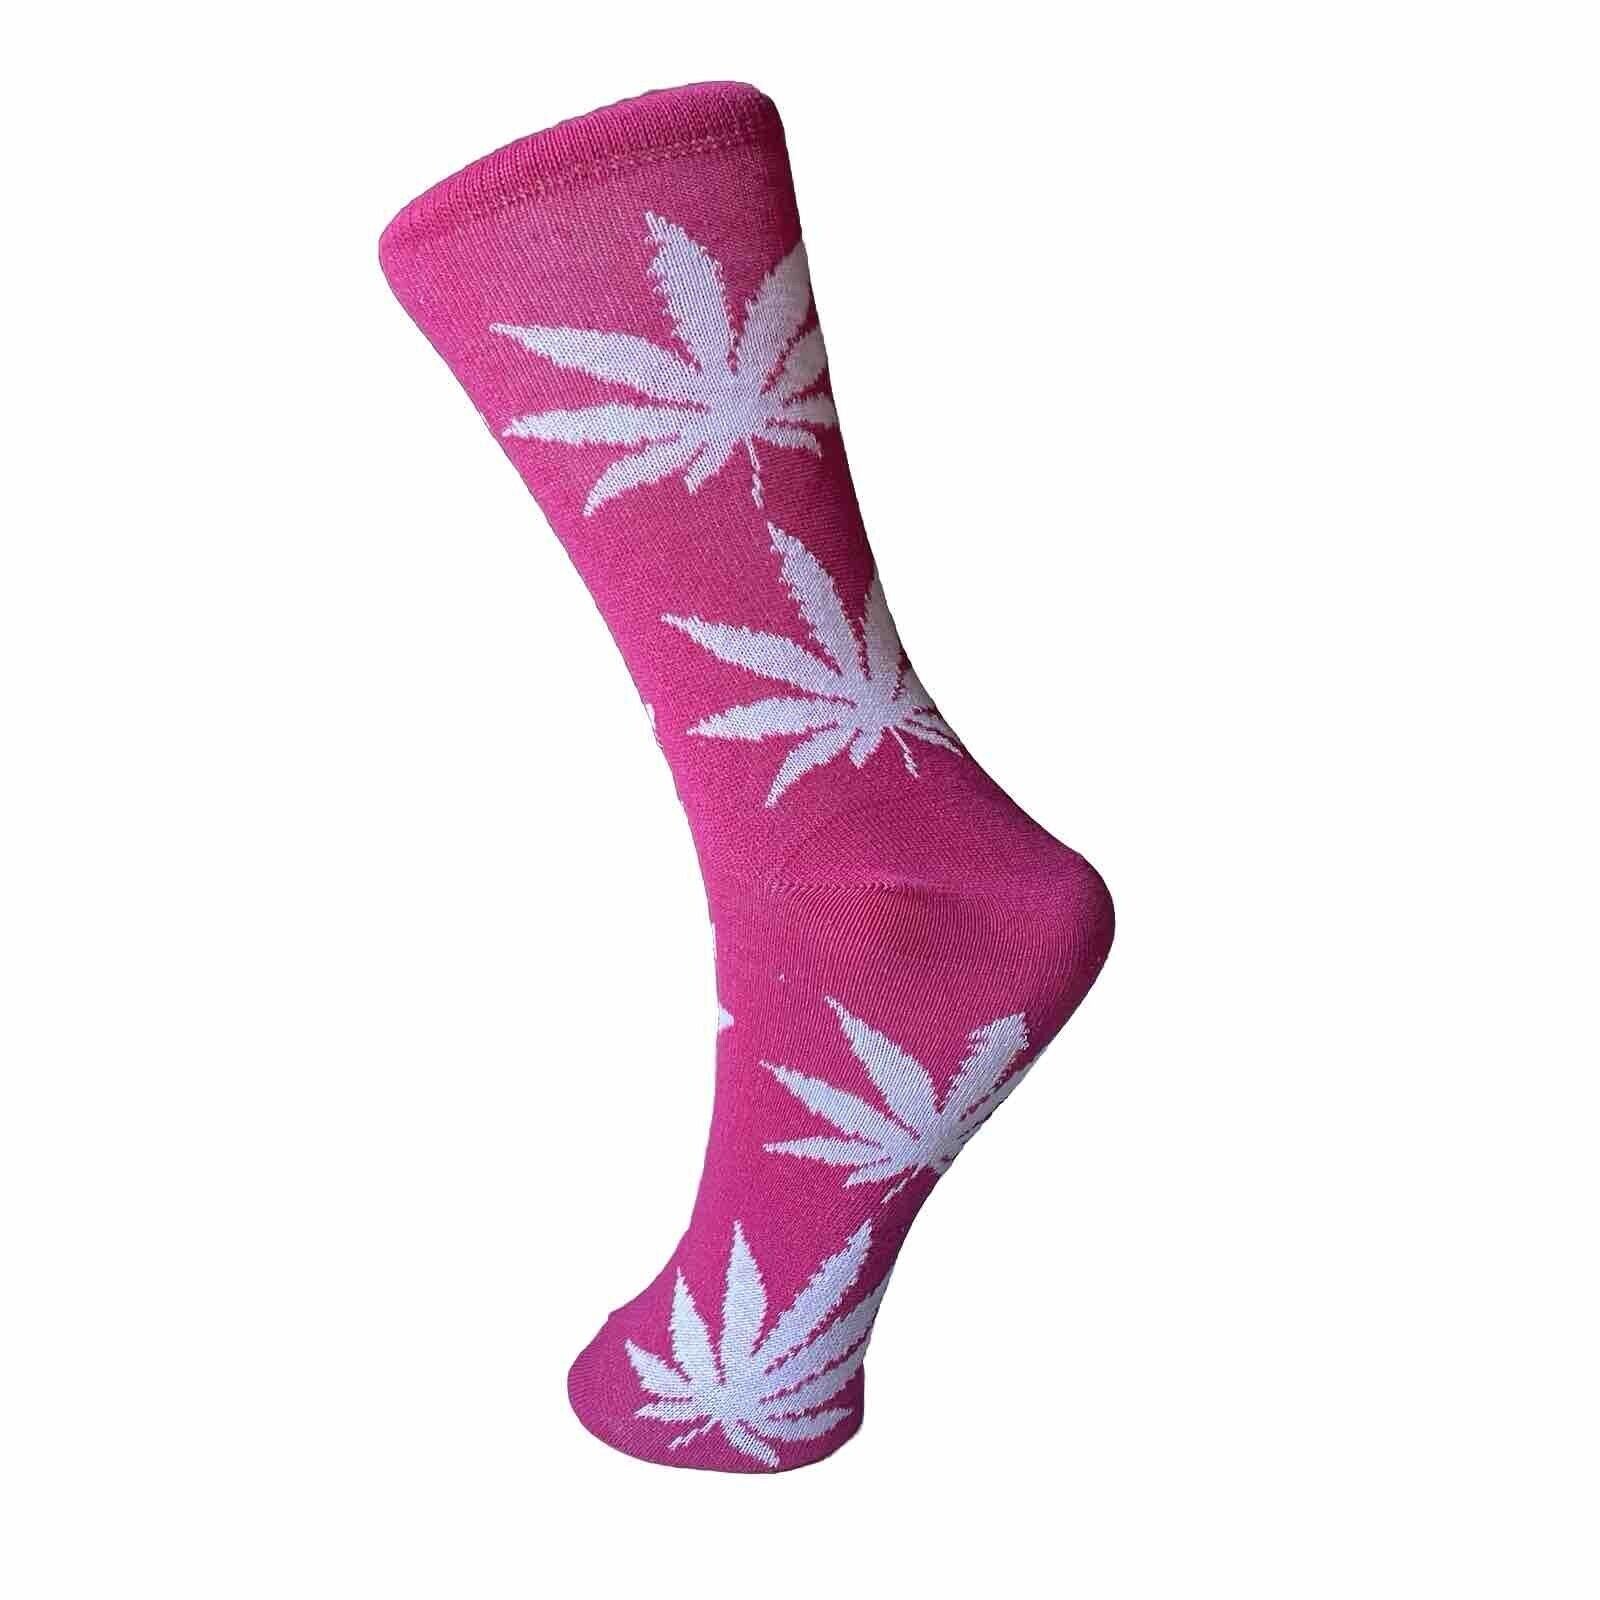 fun novelty socks weed pink leaves